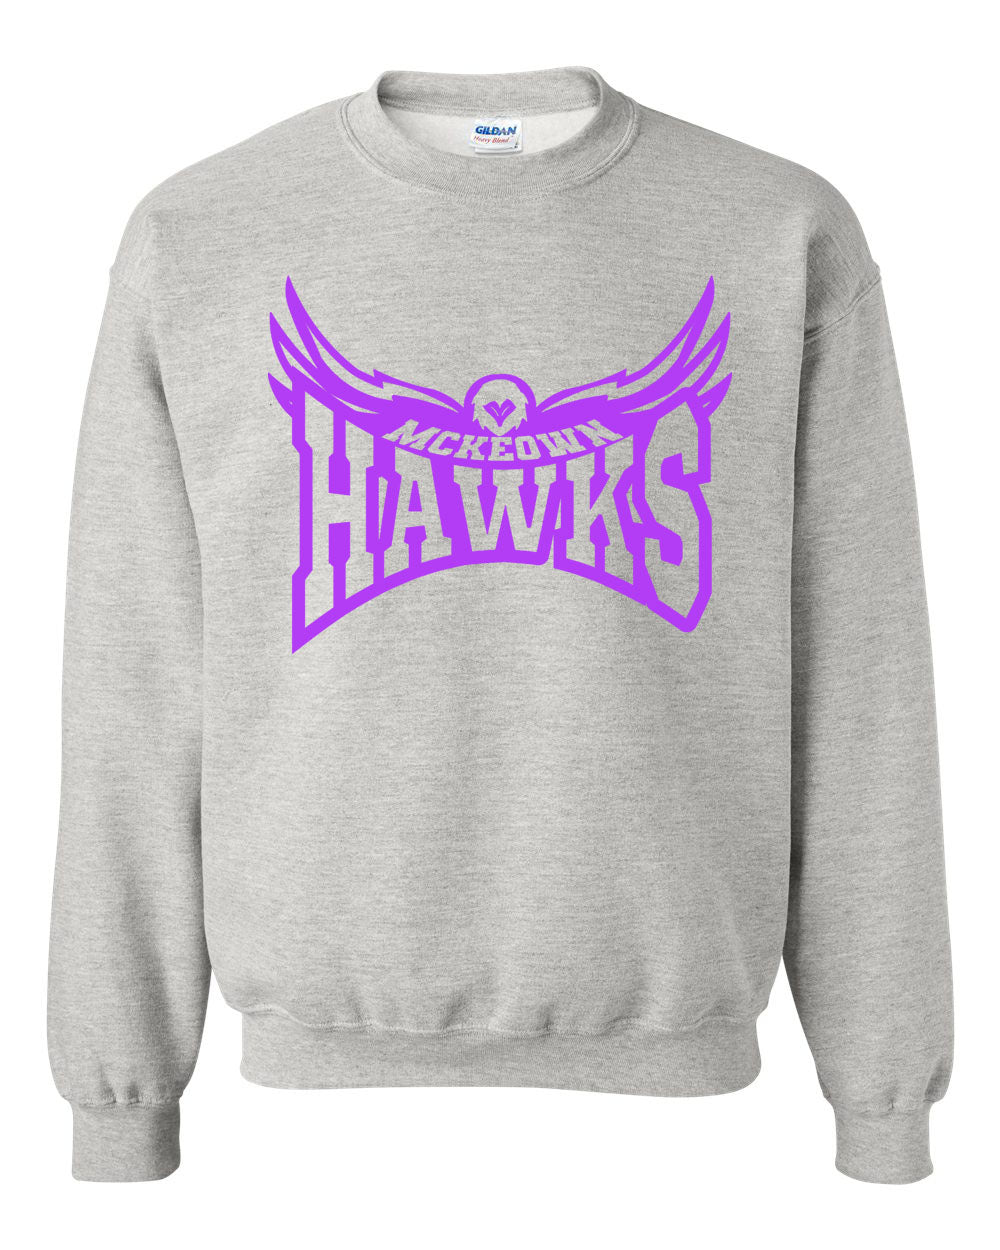 Hampton Hawk non hooded sweatshirt